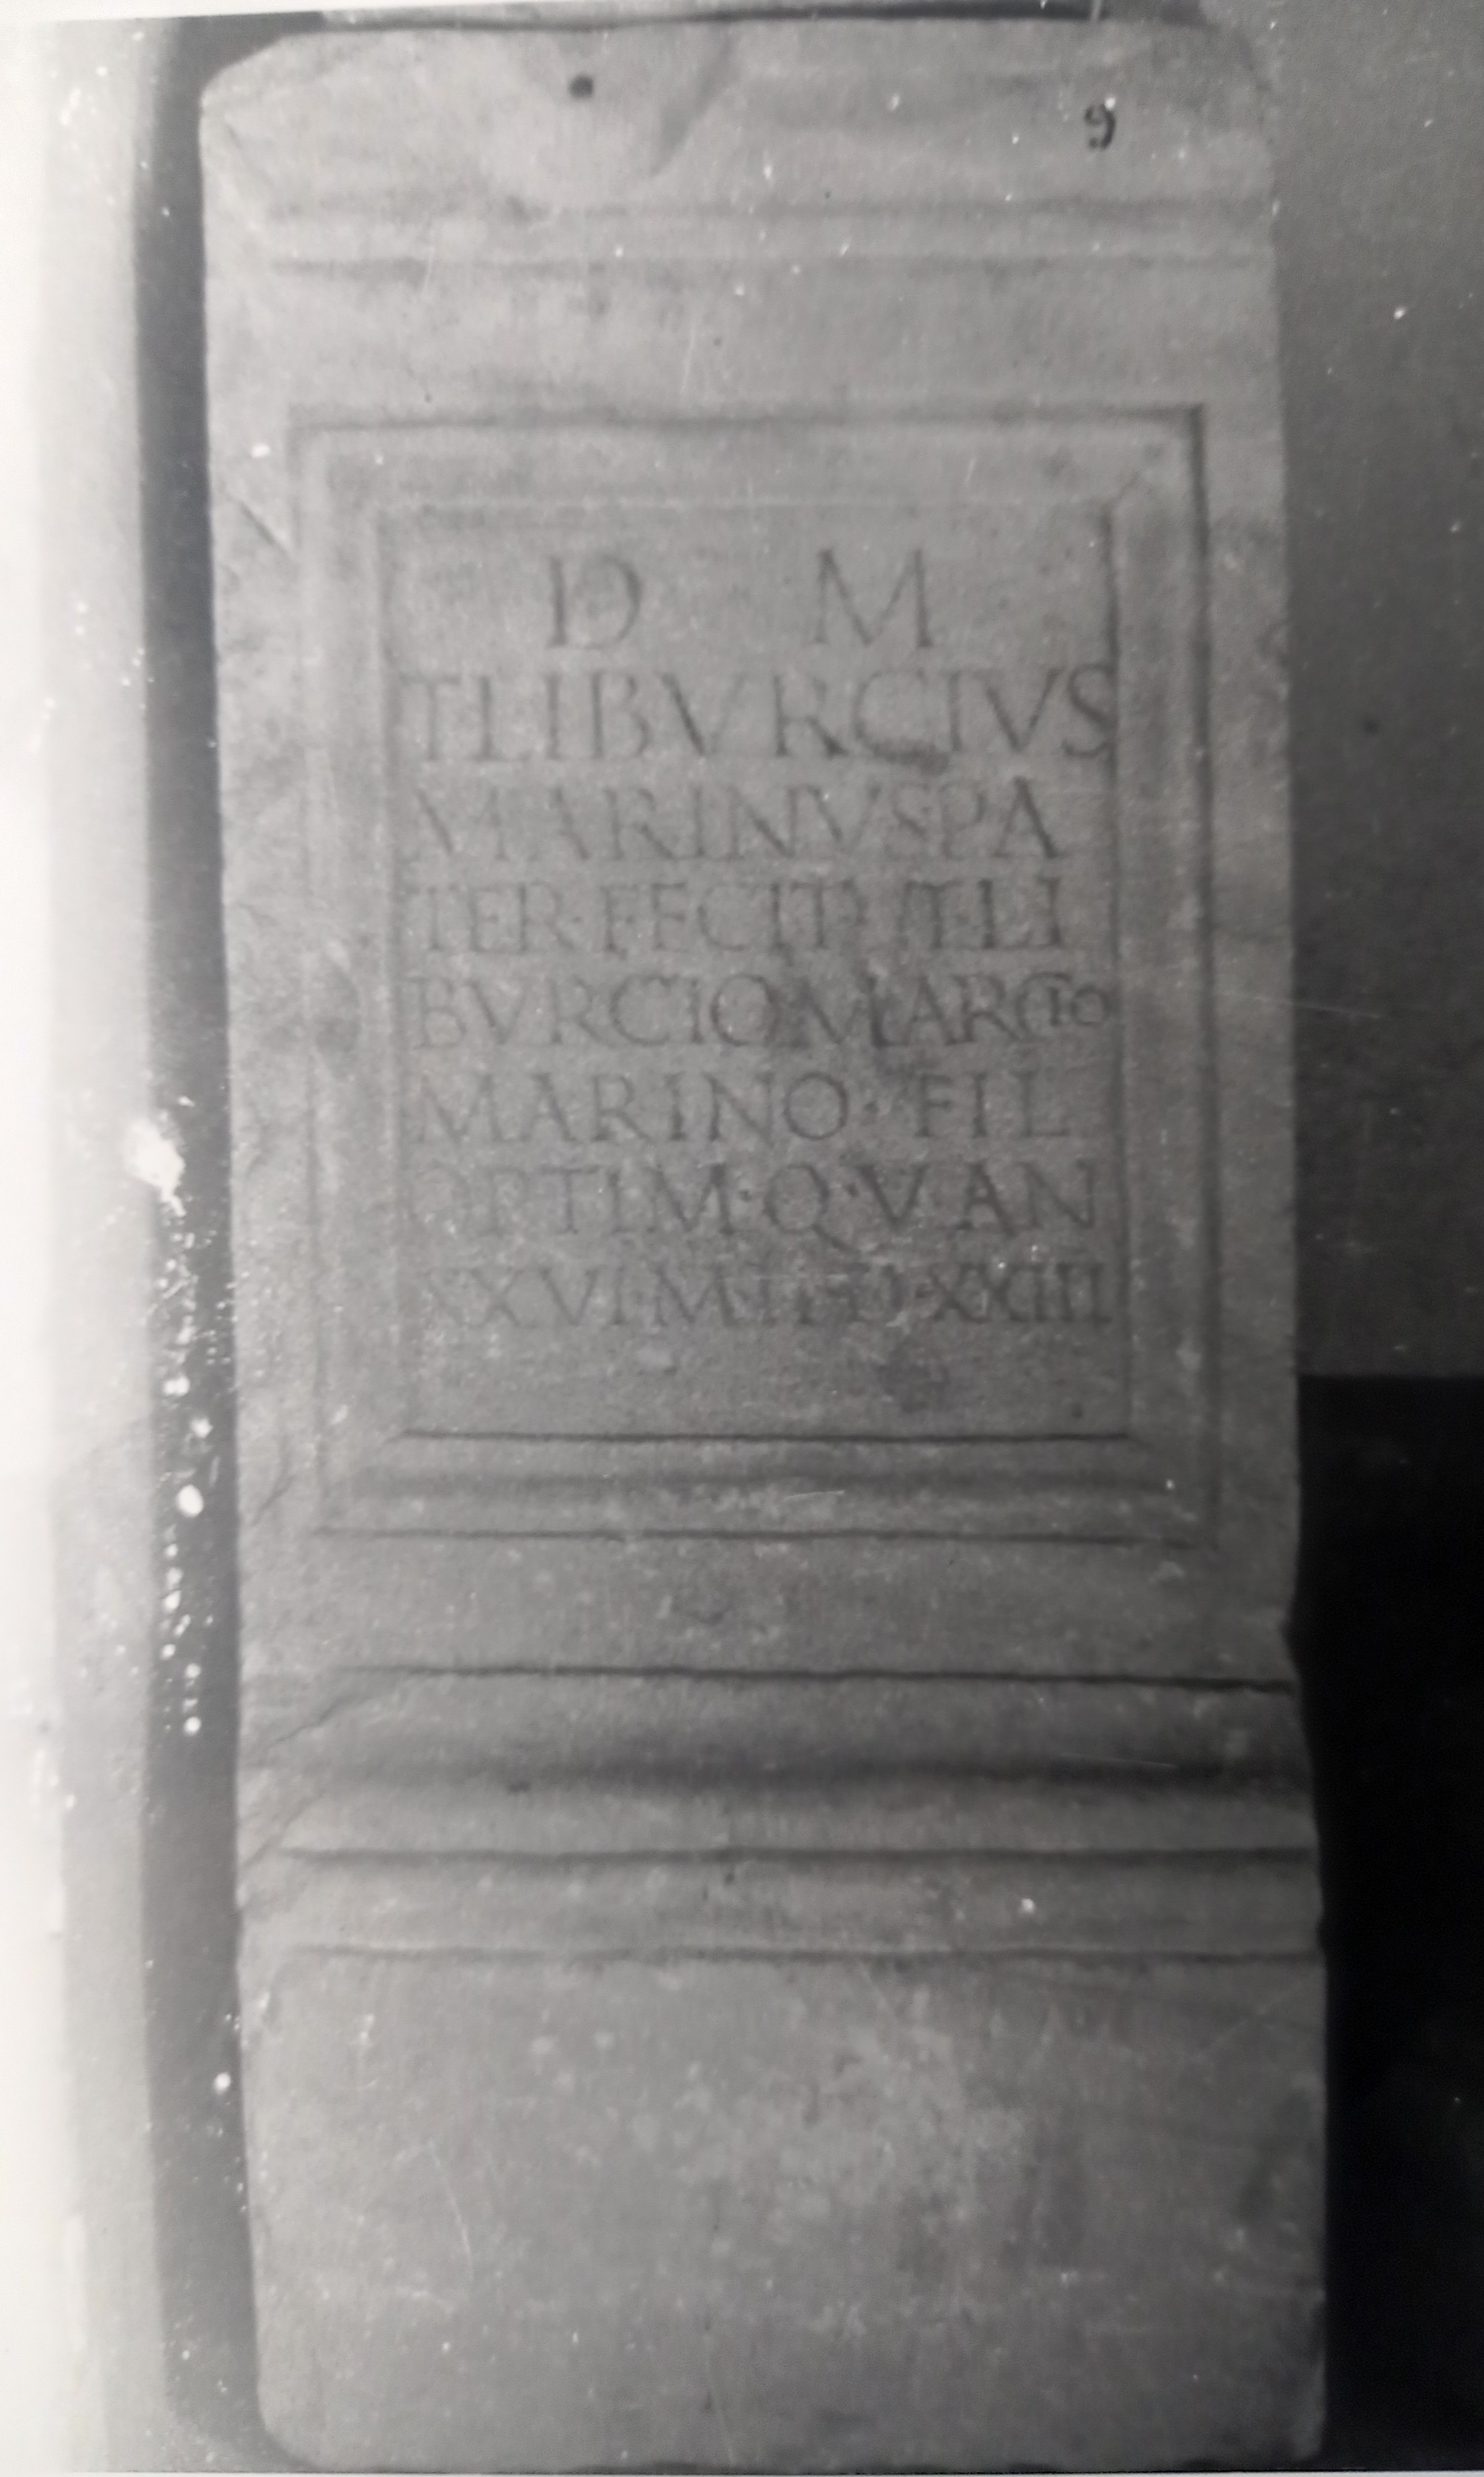 cippo/ funerario, T. Liburcius Marcius Marinus (PERIODIZZAZIONI/ STORIA/ Età antica)